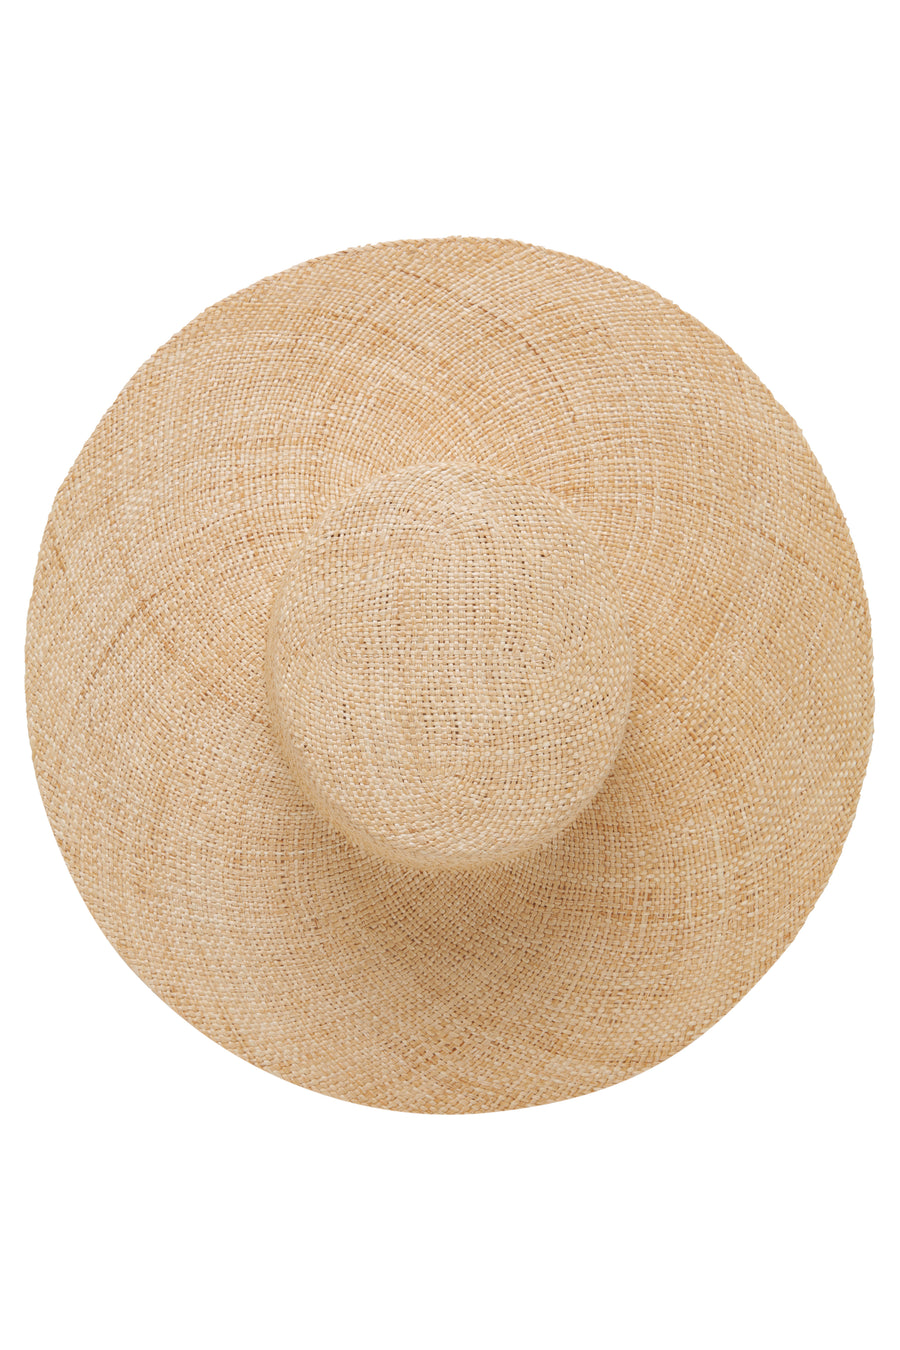 Moloka'i Sun Hat